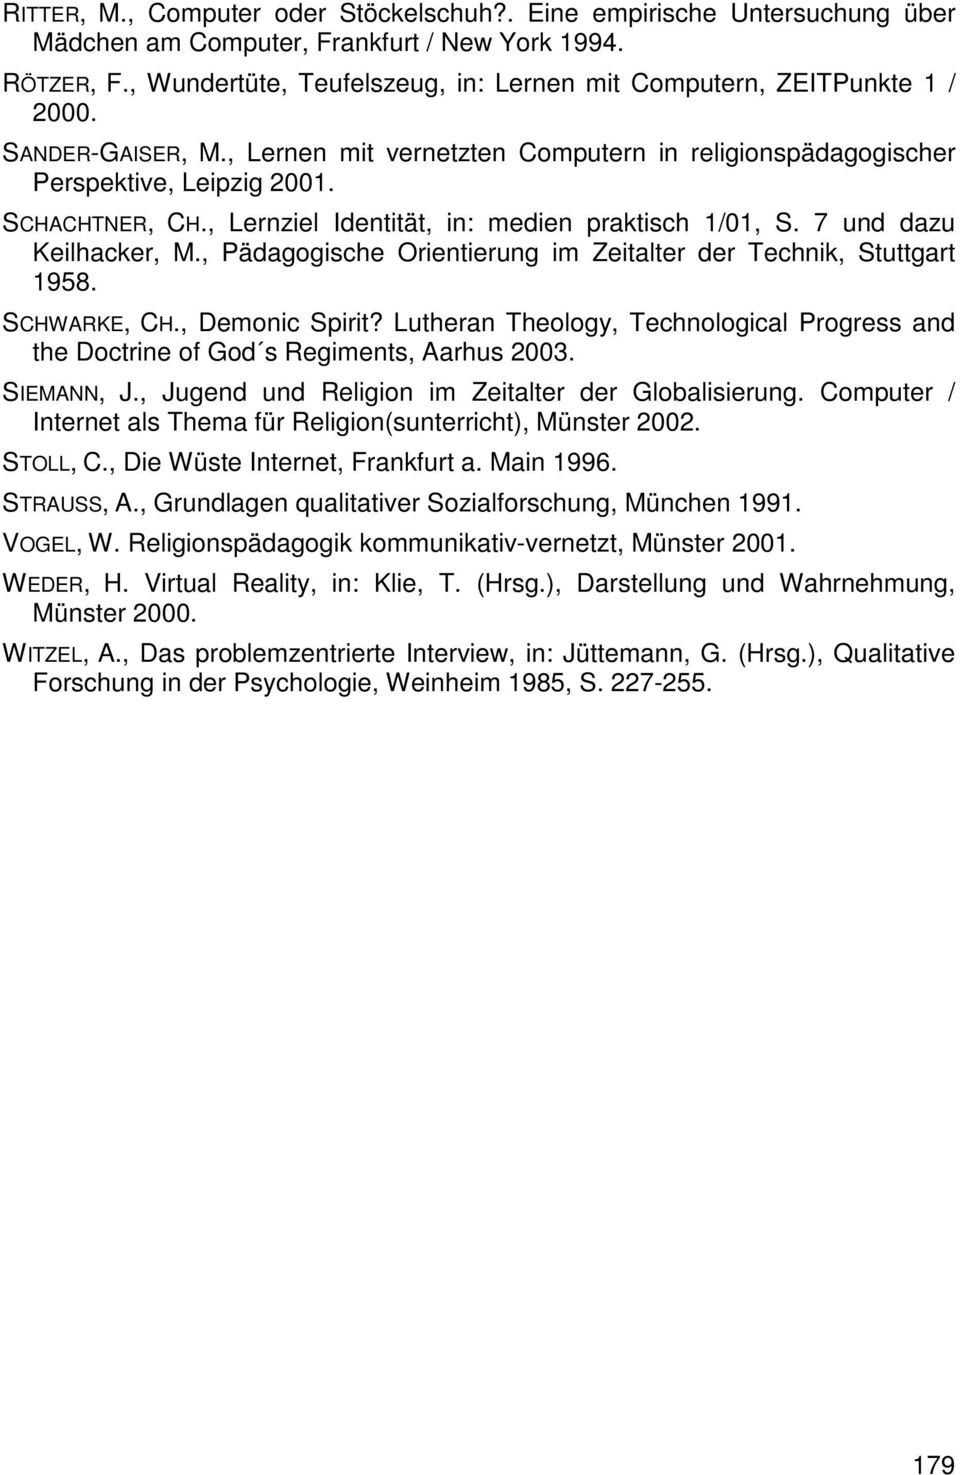 , Lernziel Identität, in: medien praktisch 1/01, S. 7 und dazu Keilhacker, M., Pädagogische Orientierung im Zeitalter der Technik, Stuttgart 1958. SCHWARKE, CH., Demonic Spirit?